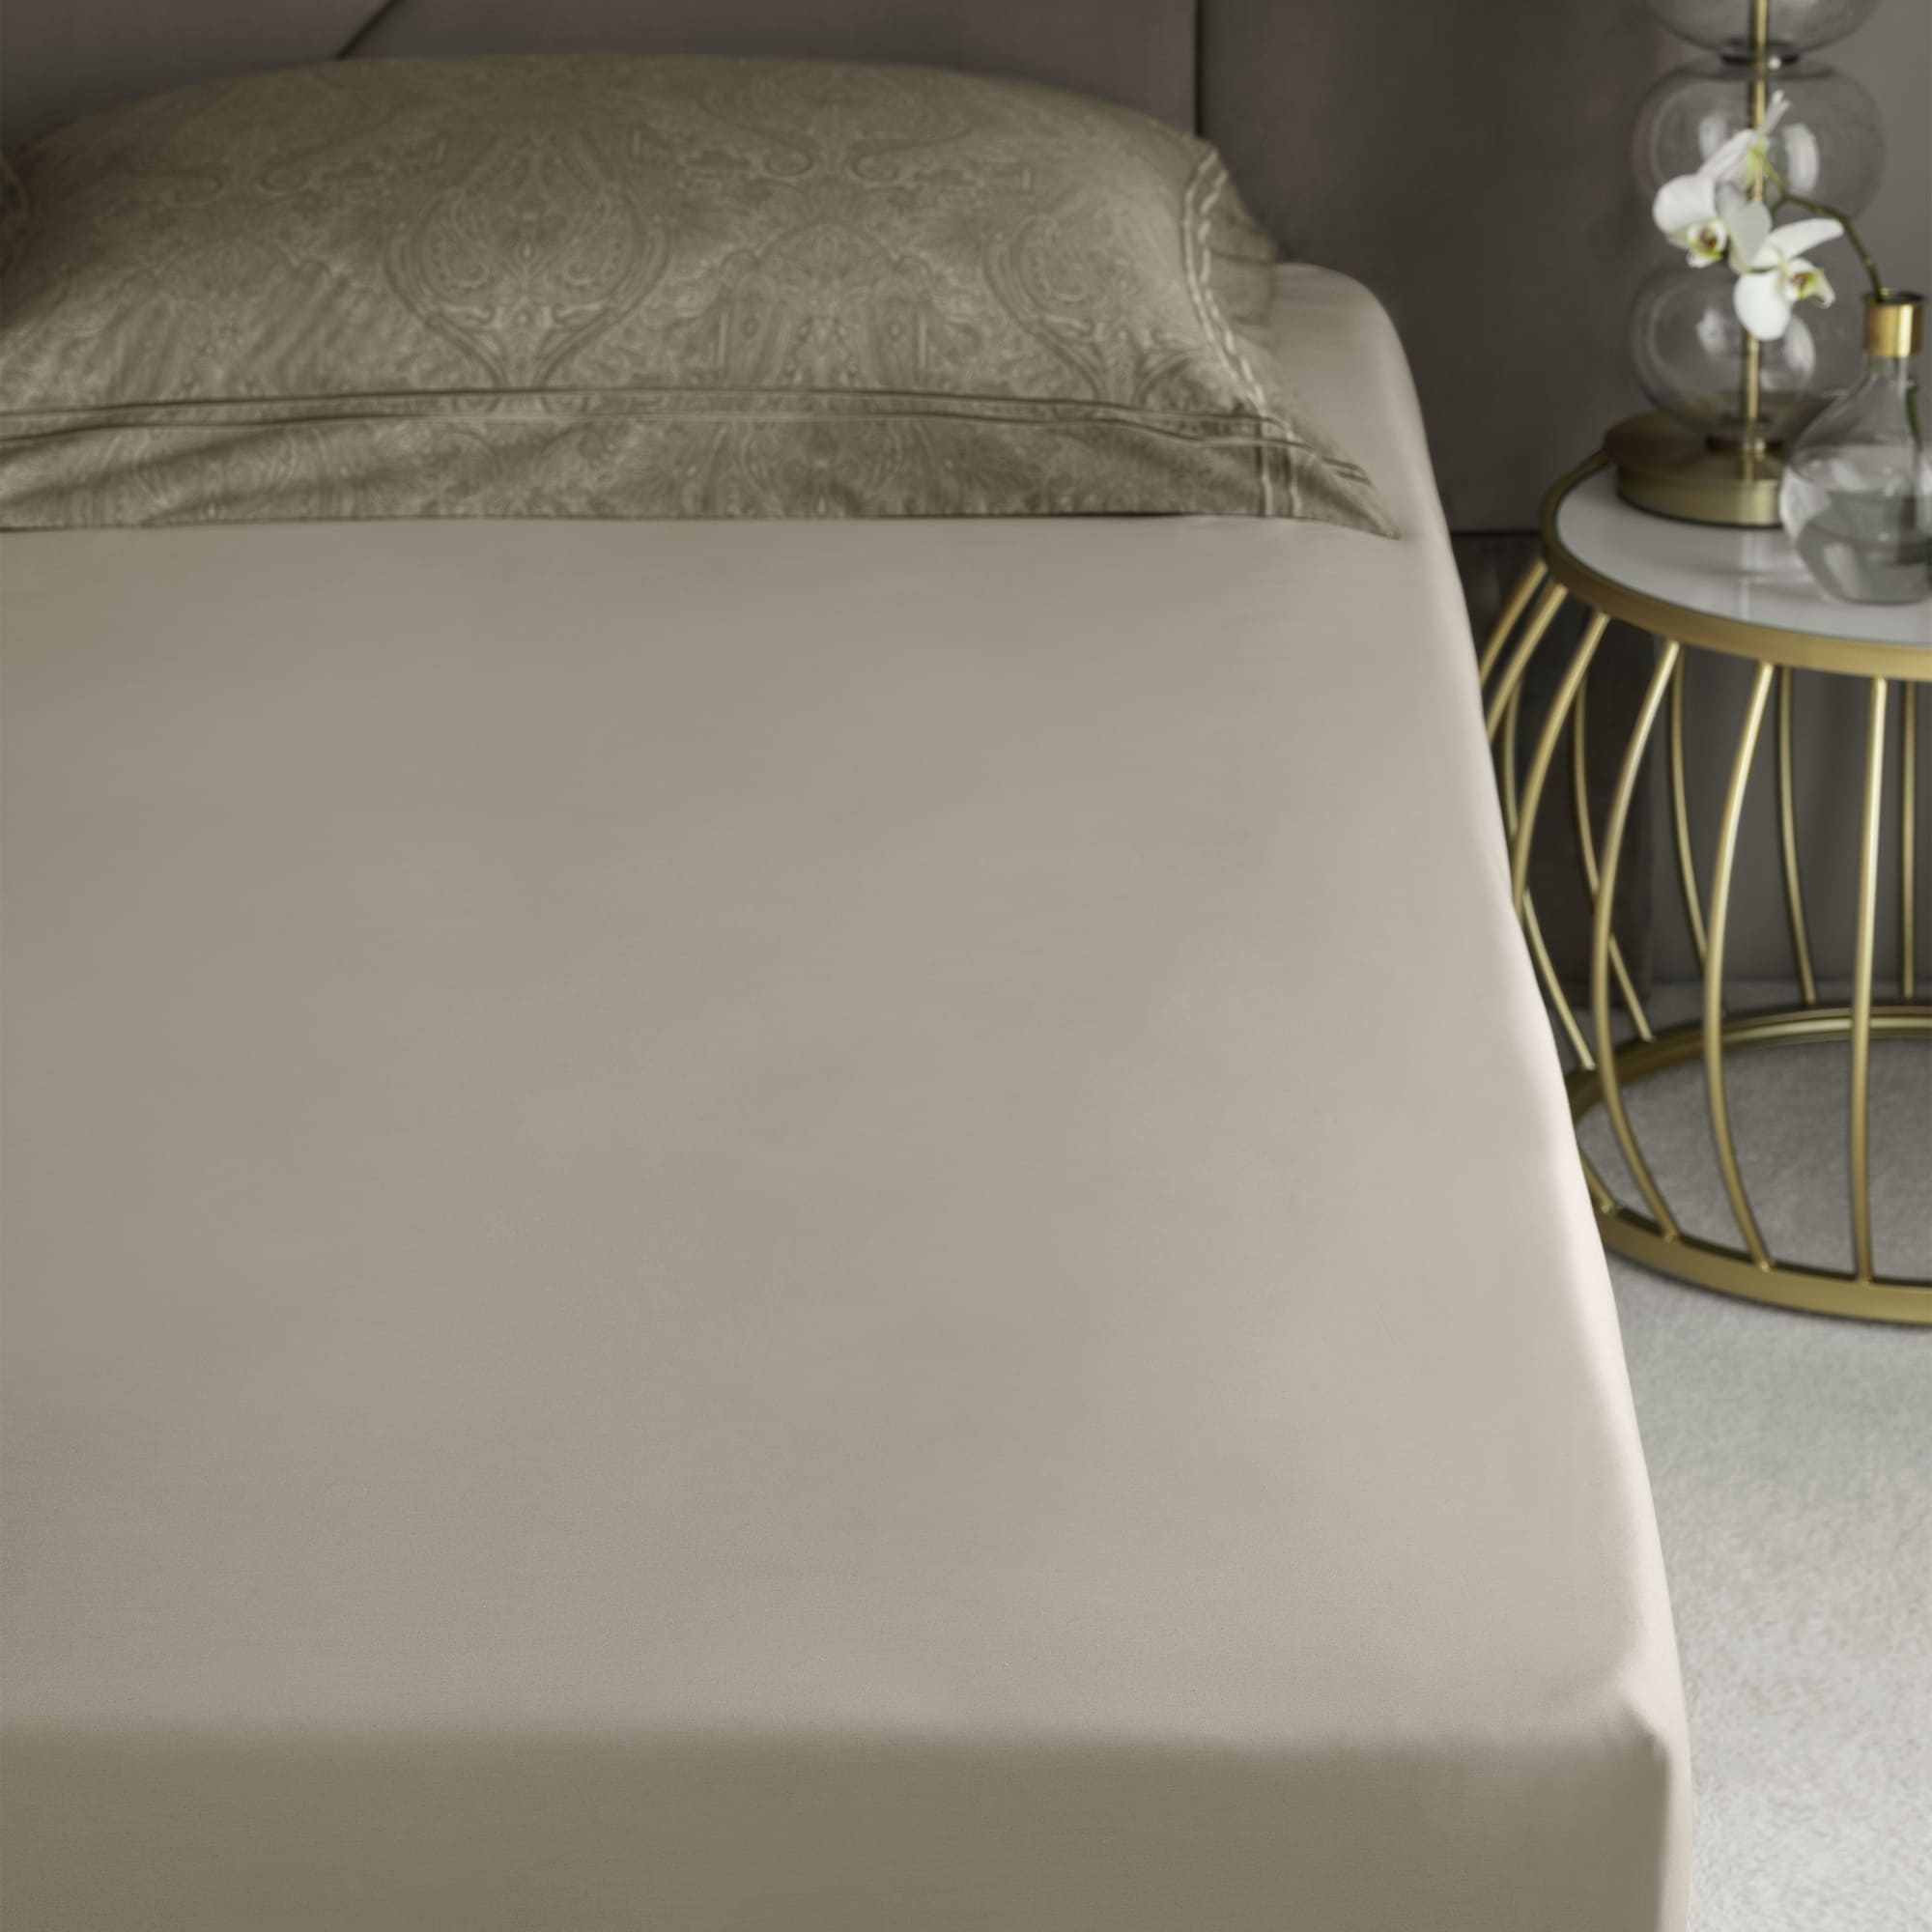 Комплект постельного белья Togas Лавинье коричневый Двуспальный кинг сайз, размер Кинг сайз - фото 4